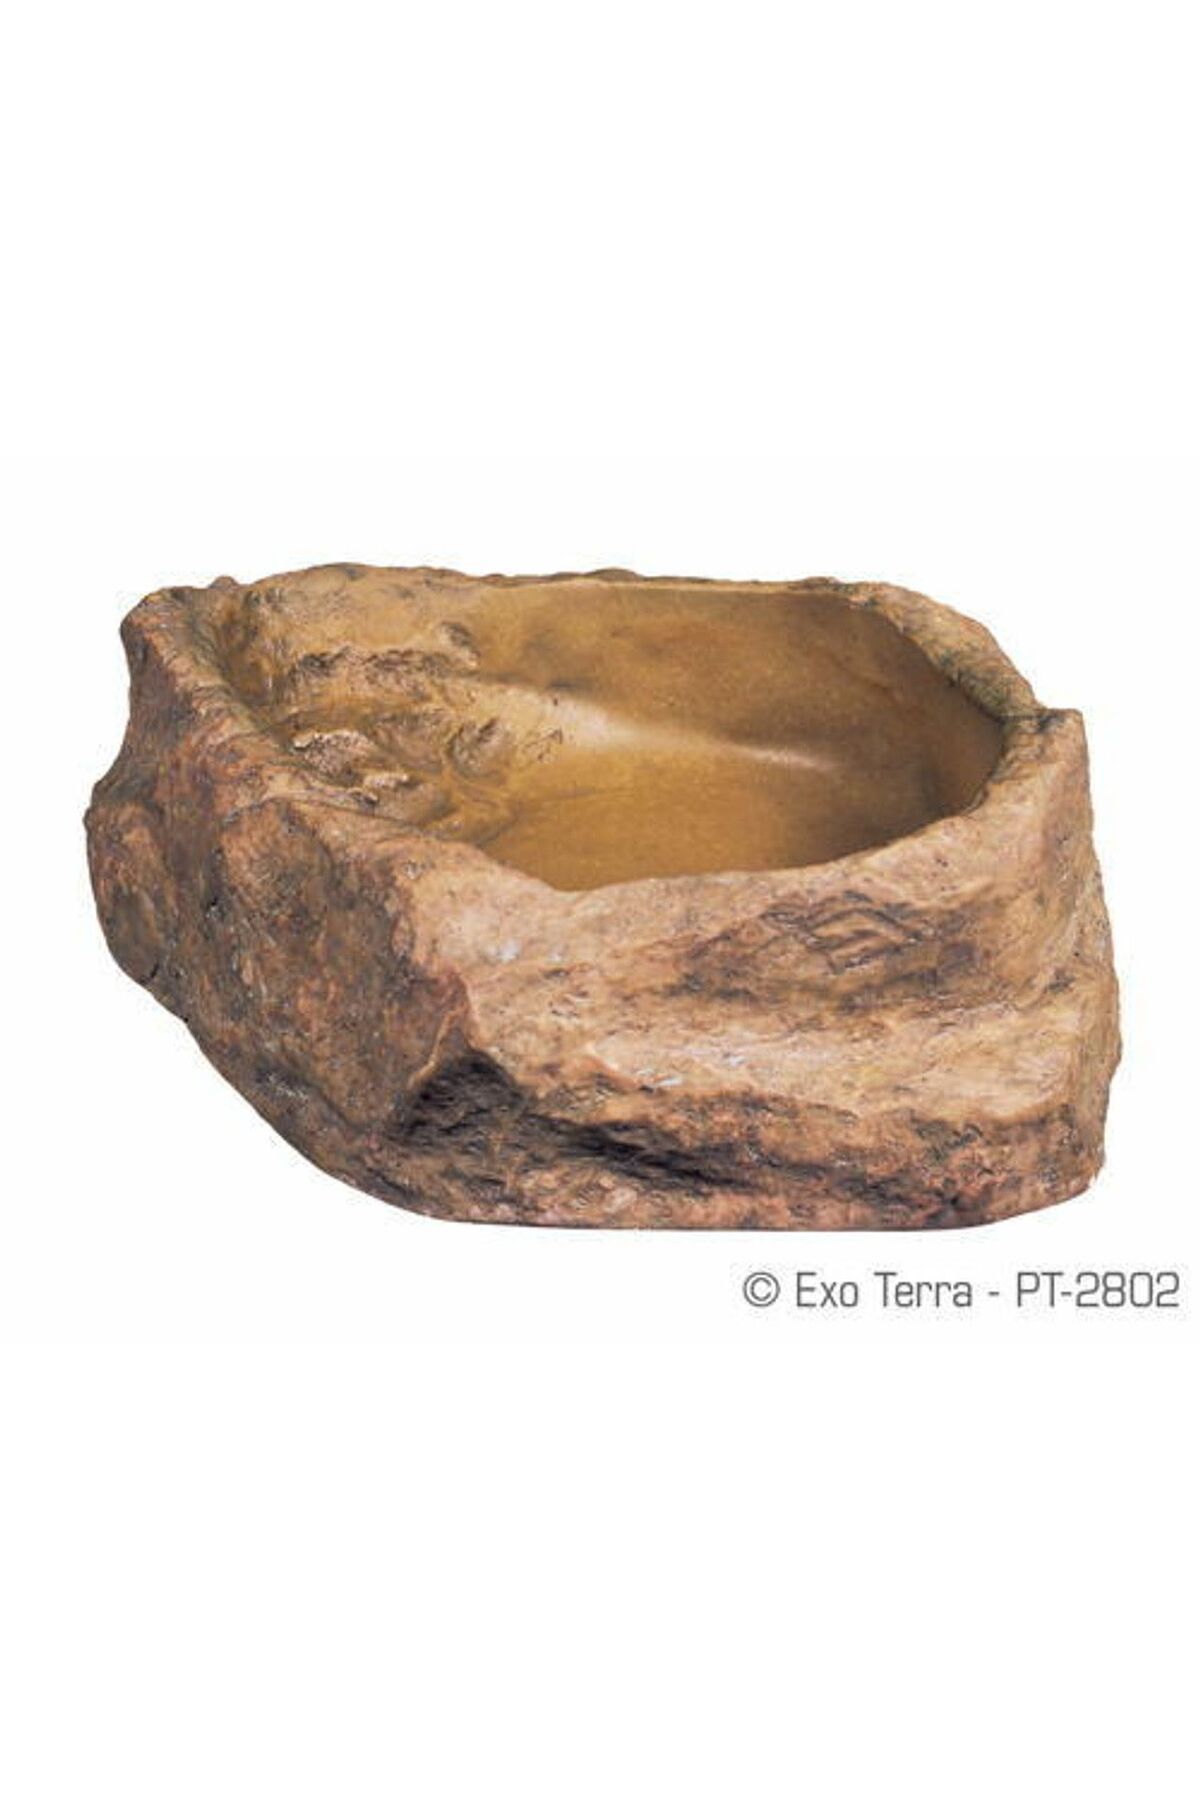 Exo Terra XL derin formda , Sürüngen mama ve su kabı , granit